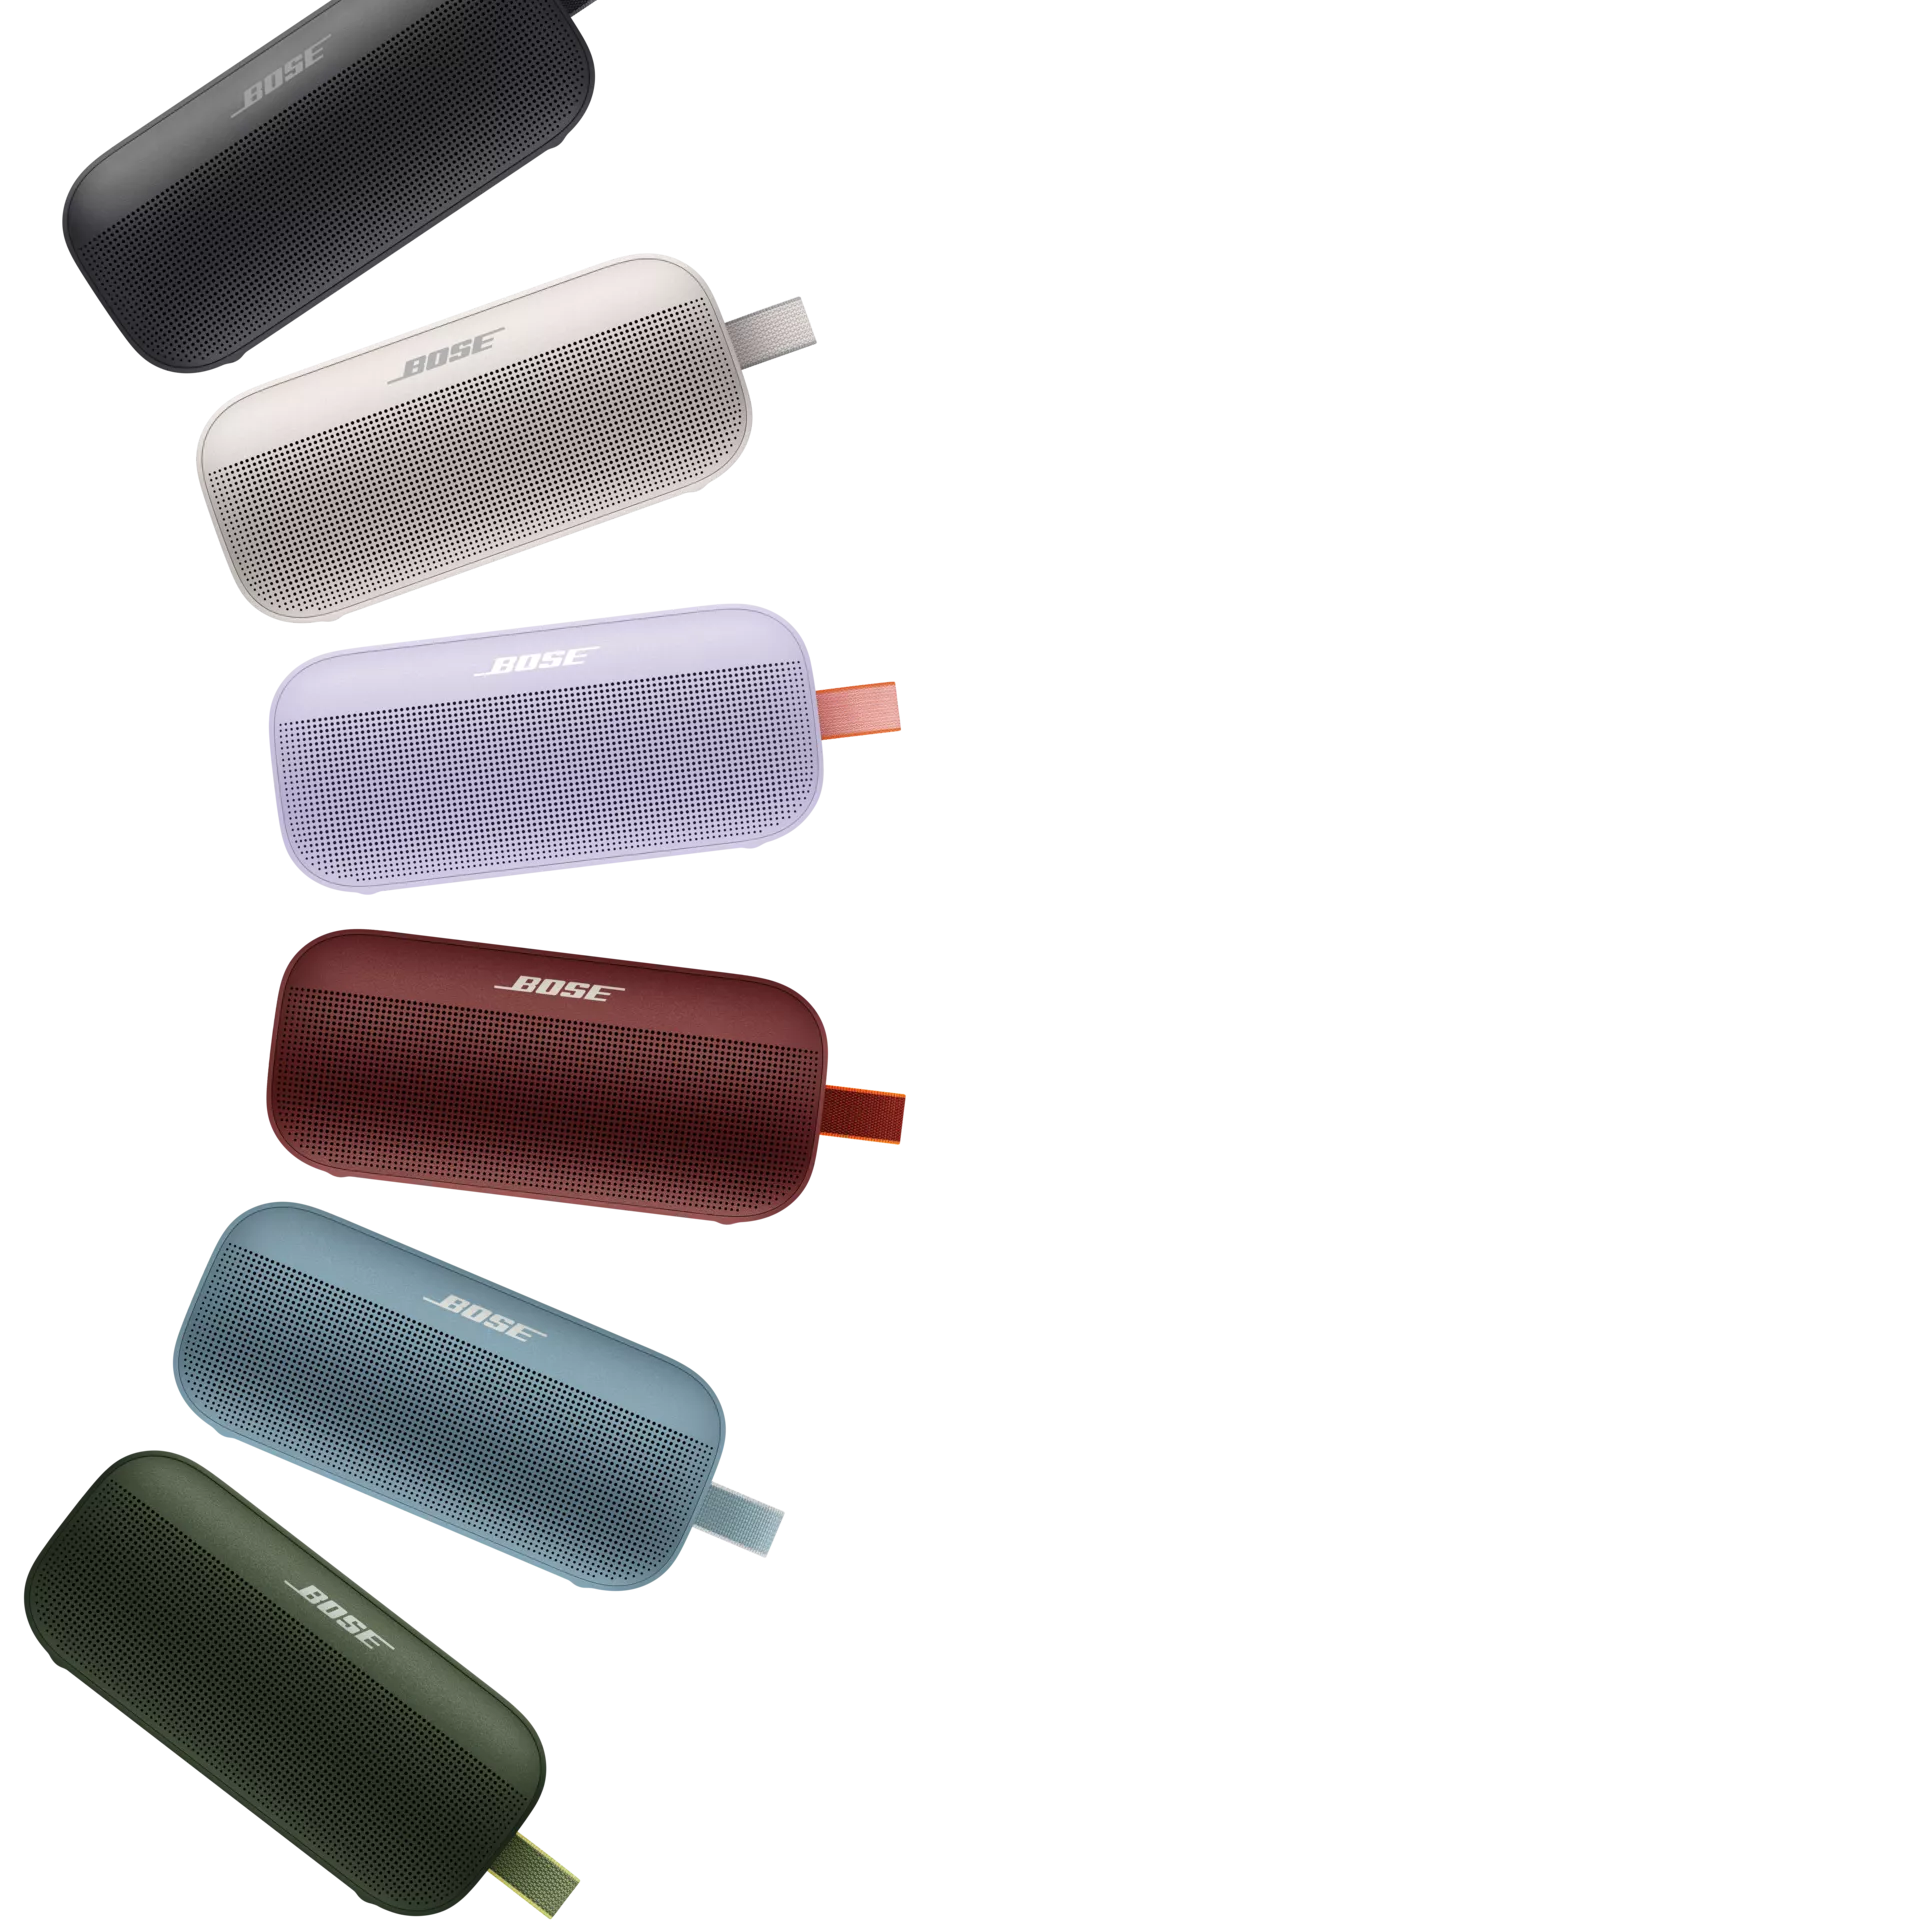 Les enceintes Bluetooth SoundLink Flex en noir, vert cyprès, rouge carmin, bleu pierre et blanc fumé